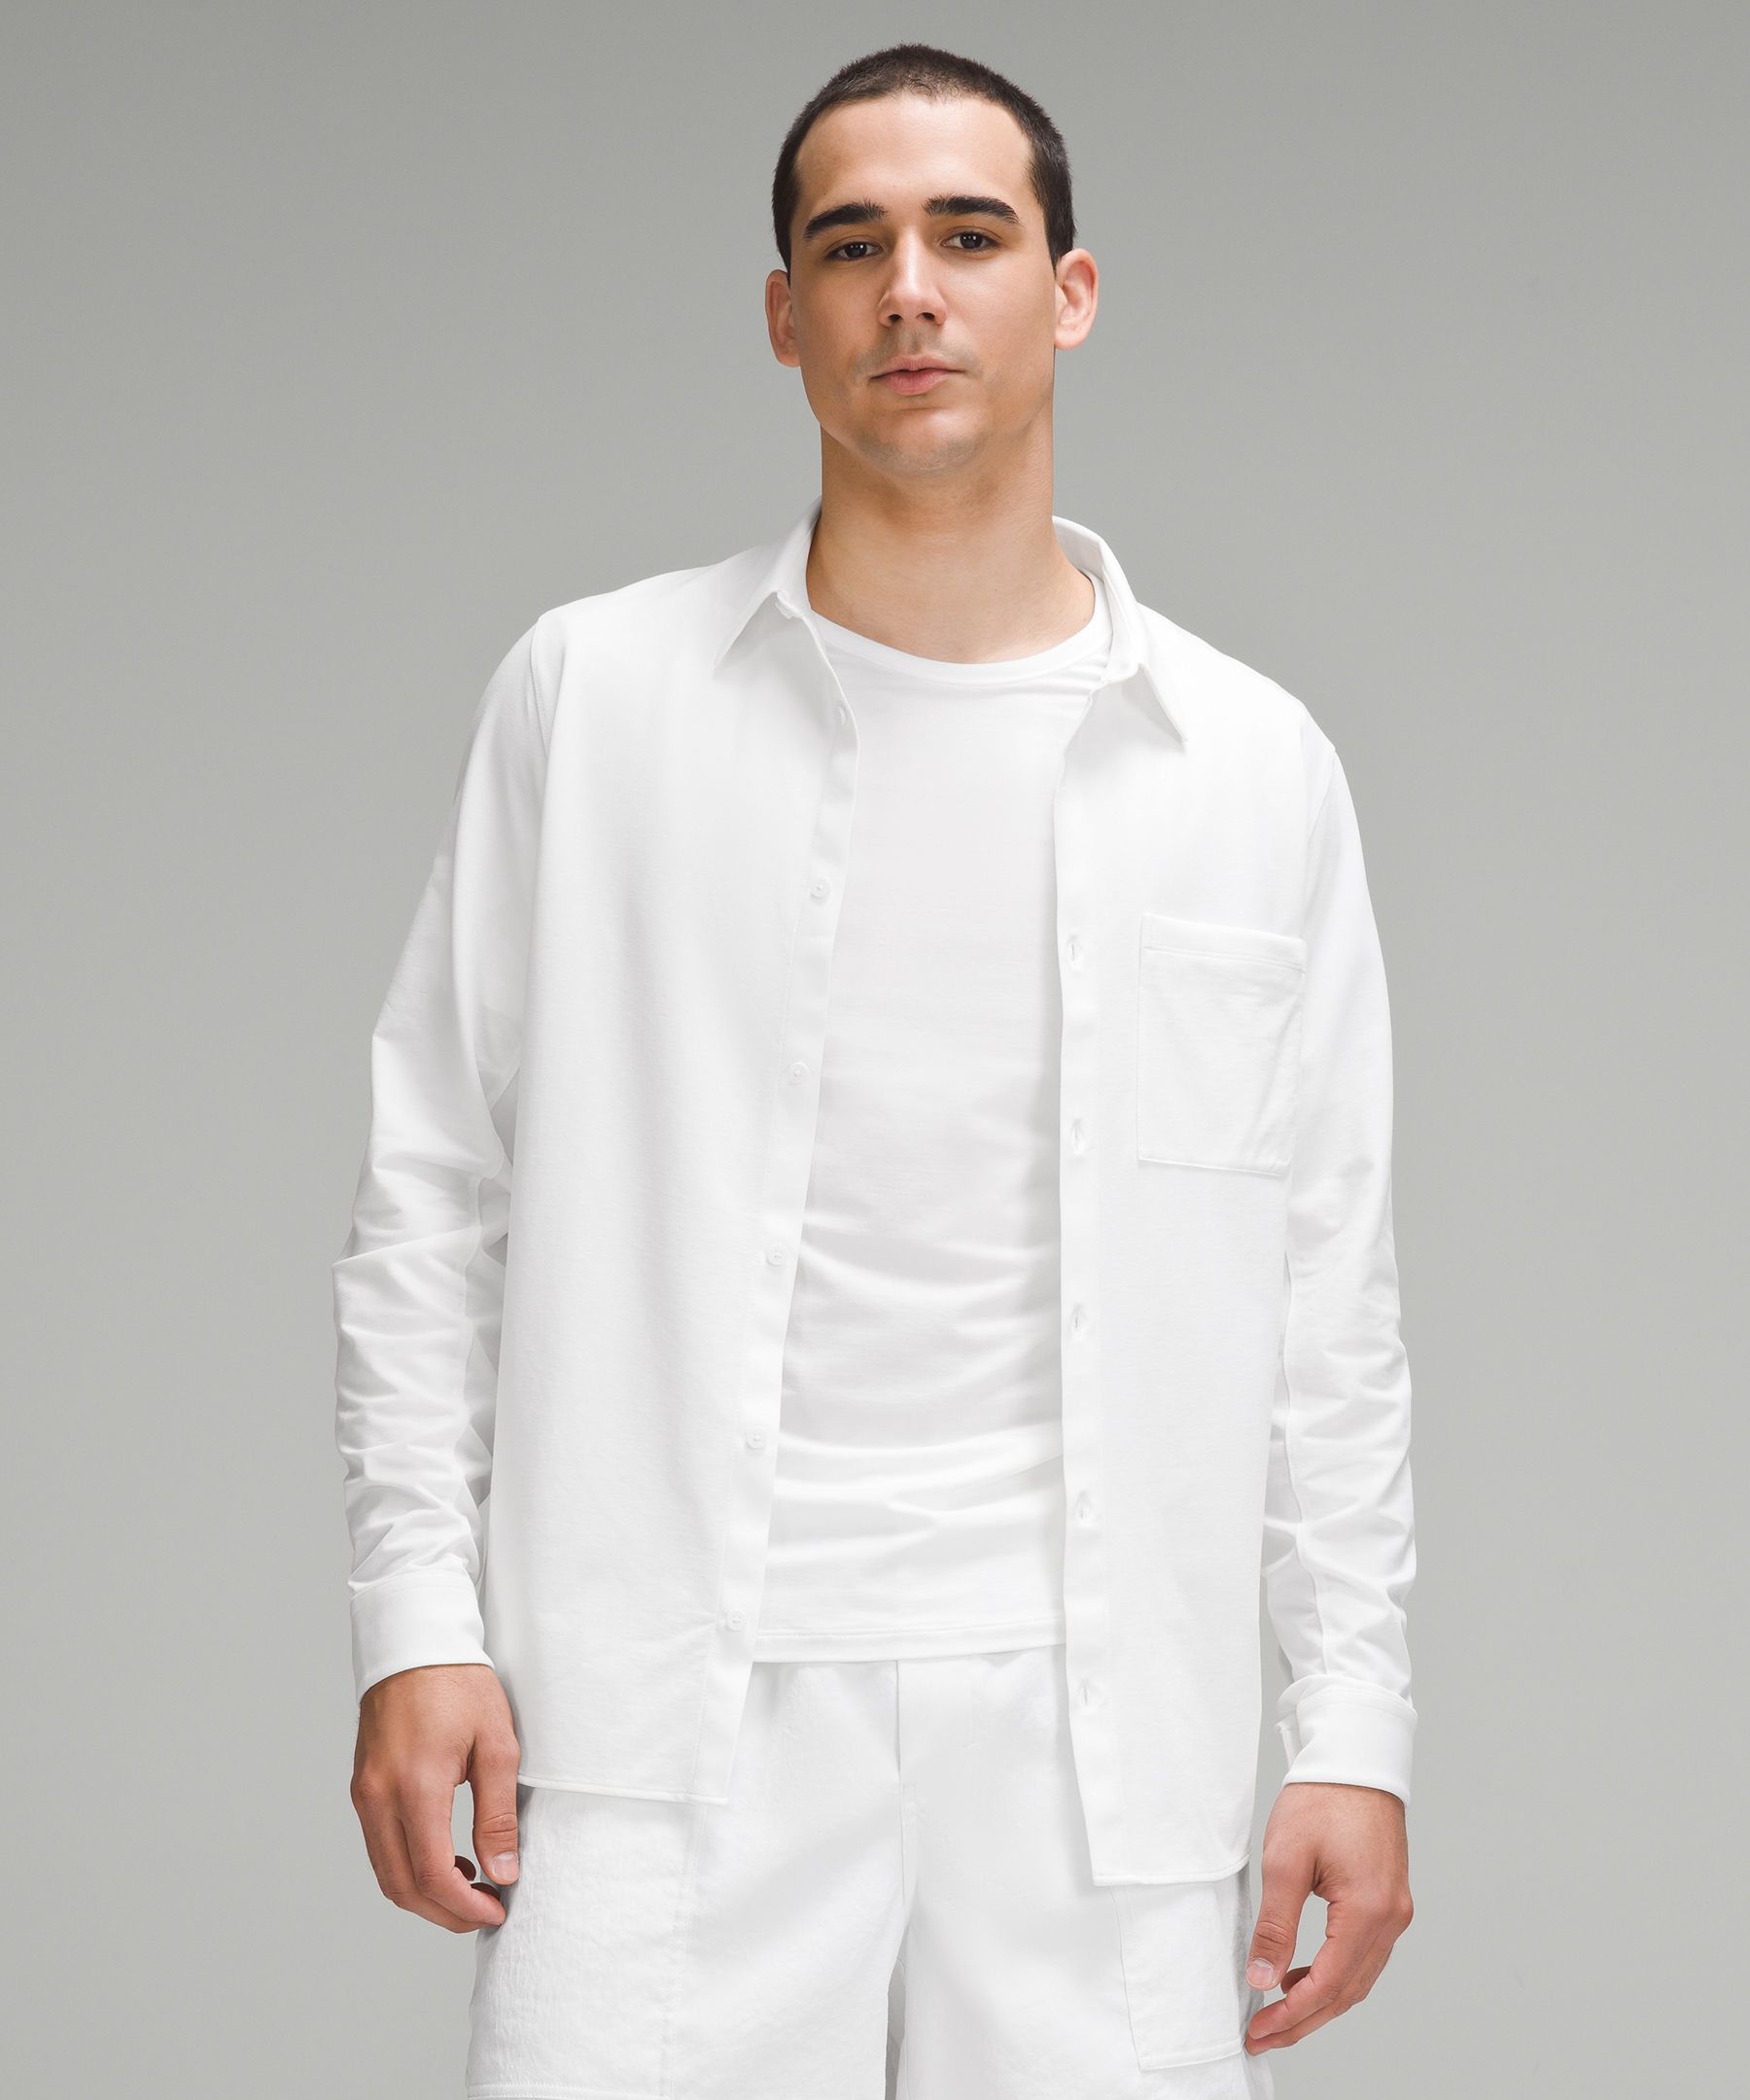 lululemon mens white shirt